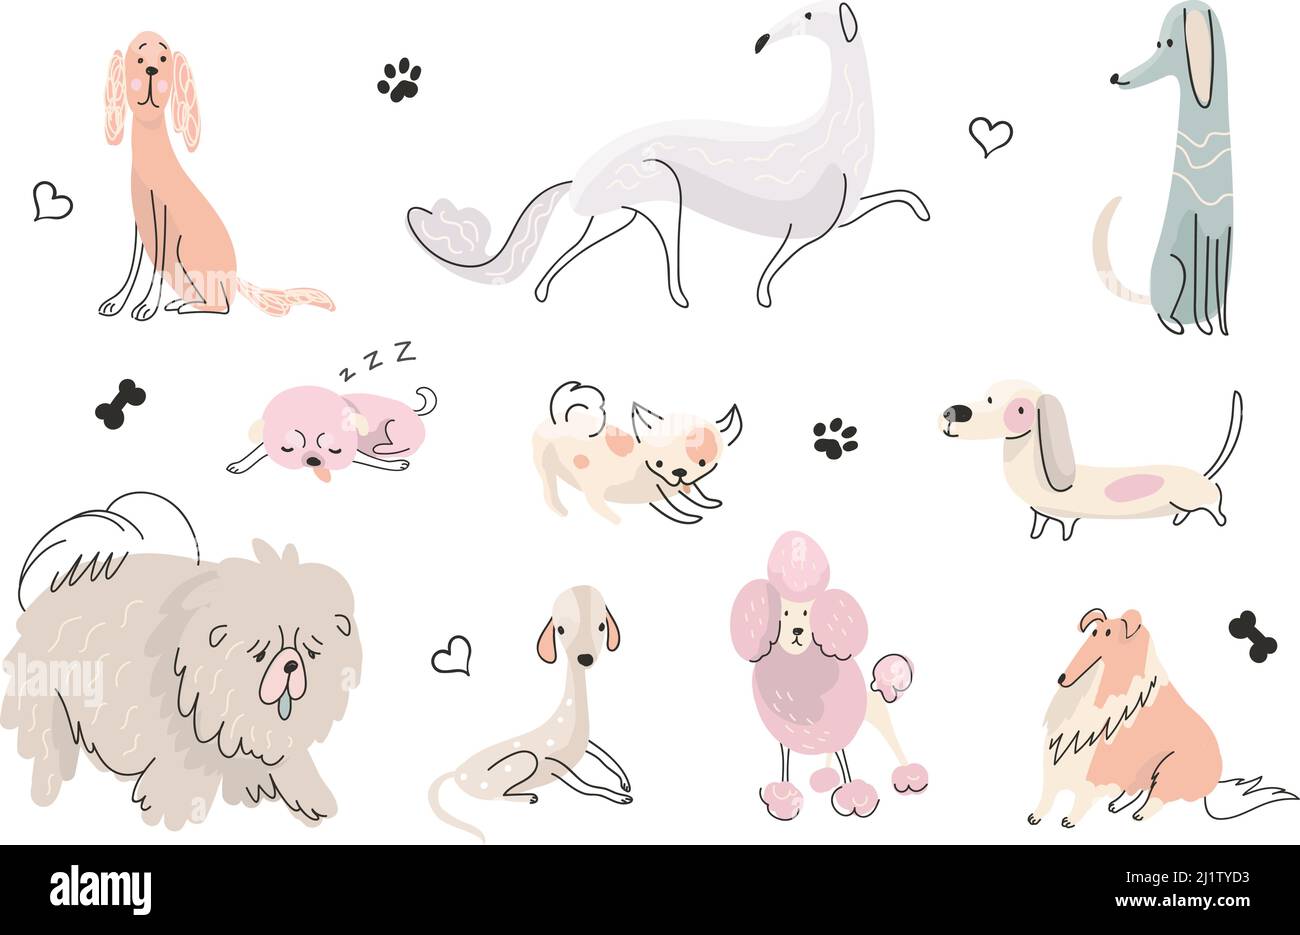 Doodle niedlichen Welpen. Aktive Hundebemalung, Hunde verschiedene Posen. Handgezeichnete Tiere, flache Design-Babytiere. Lustige Welpen spielen, nowaday Vektor-Zeichen Stock Vektor